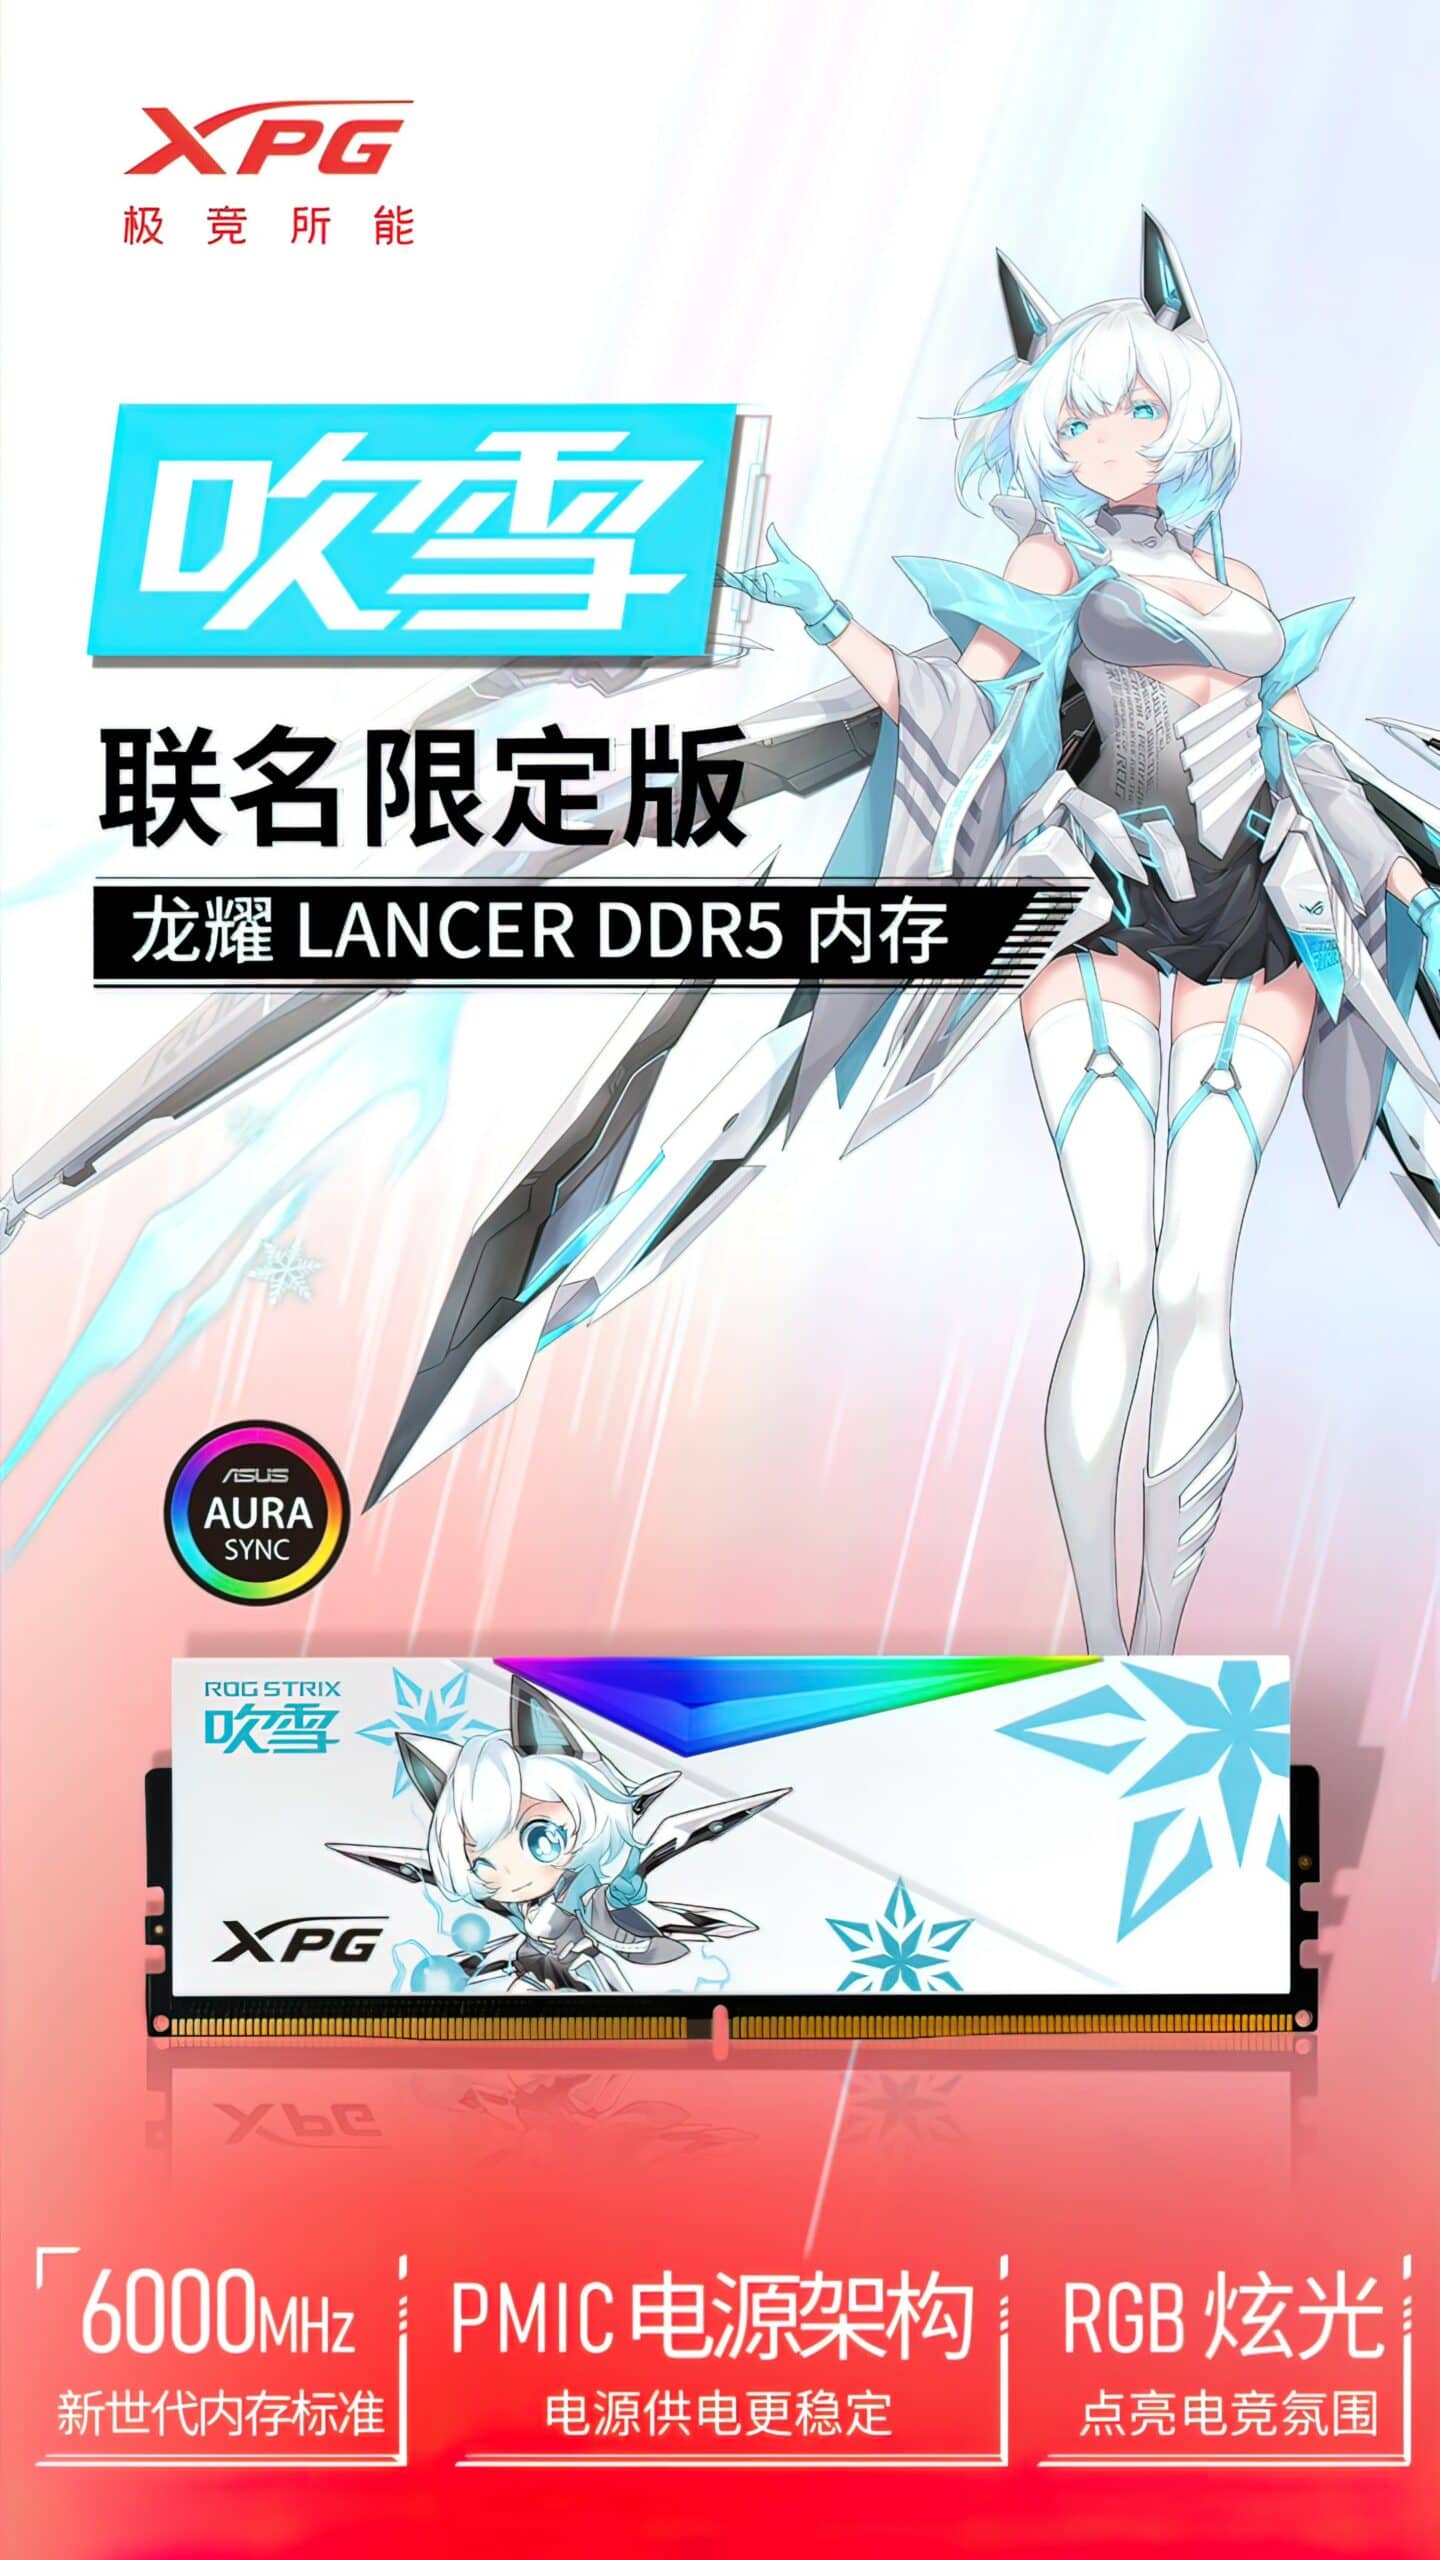 ADATA XPG ASUS DDR5 Anime Memory 2 Custom scaled 1 MMOSITE - Thông tin công nghệ, review, thủ thuật PC, gaming